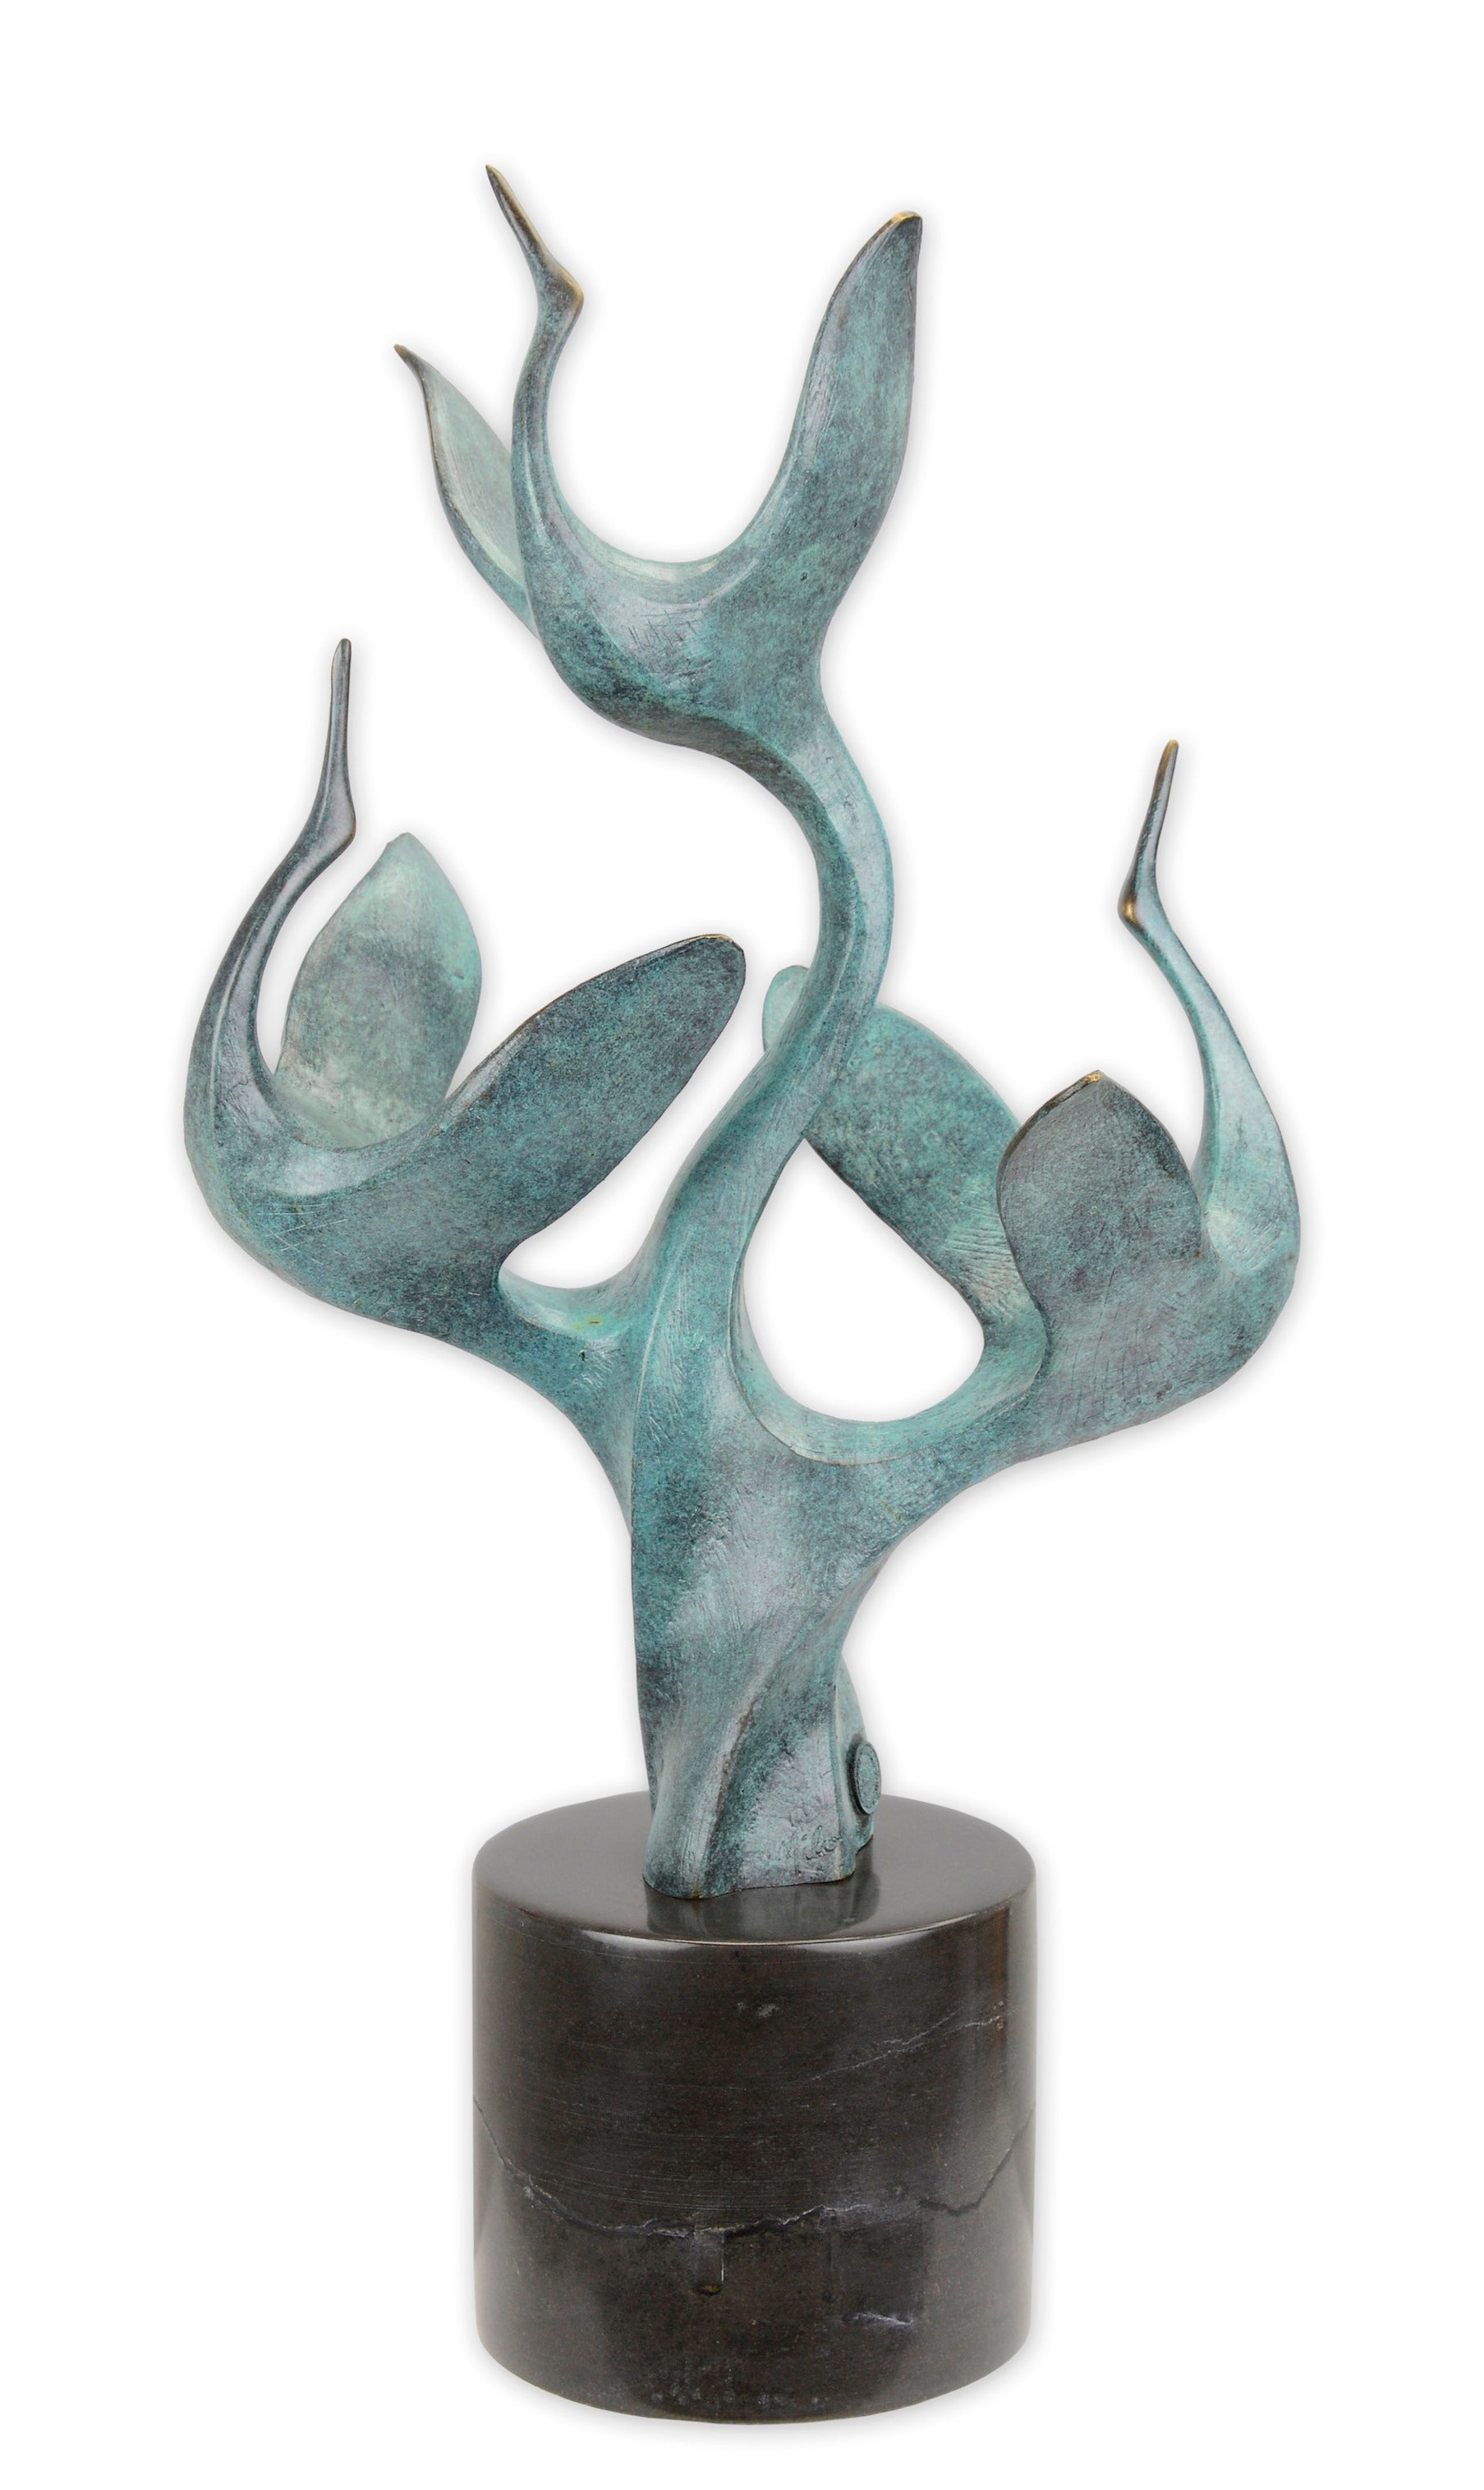 Bronzen beeld van dansende of vliegende kraanvogels